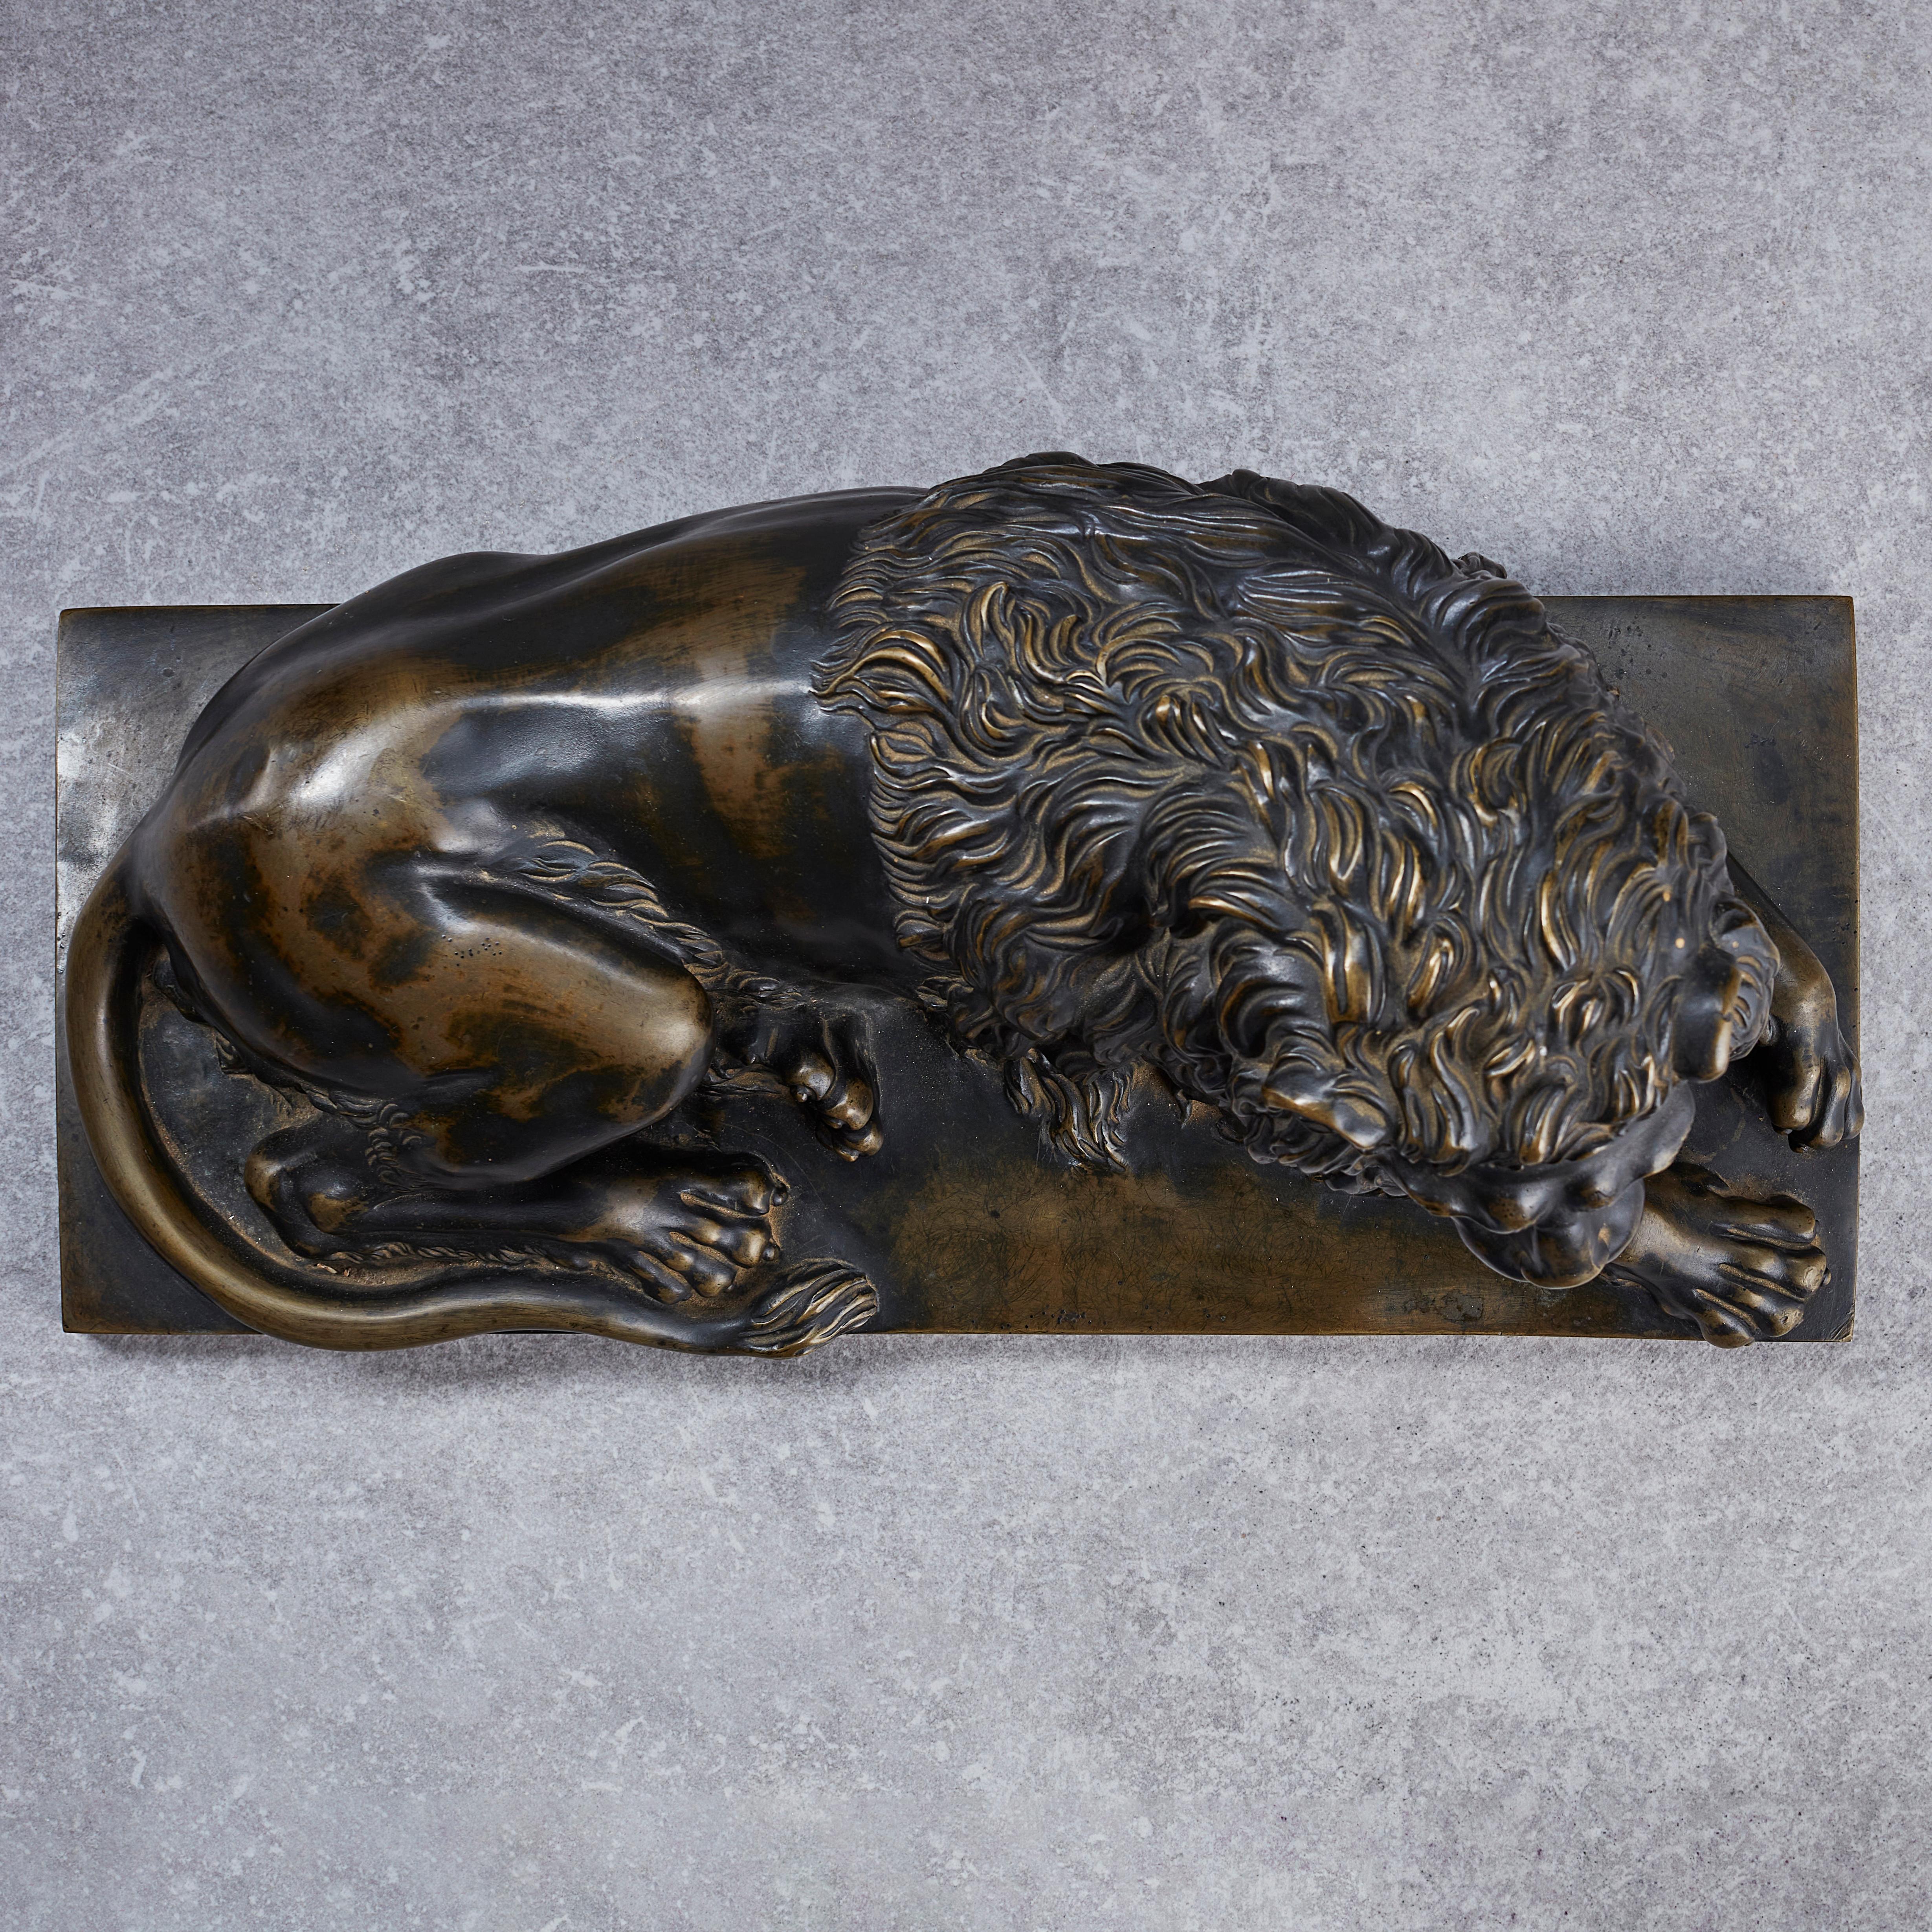 Très beau et grand bronze représentant un lion couché. De nombreux détails, comme le traitement de la crinière du lion, témoignent de la maîtrise du sculpteur et de sa compréhension de l'anatomie de ce grand animal. Socle en bois avec placage